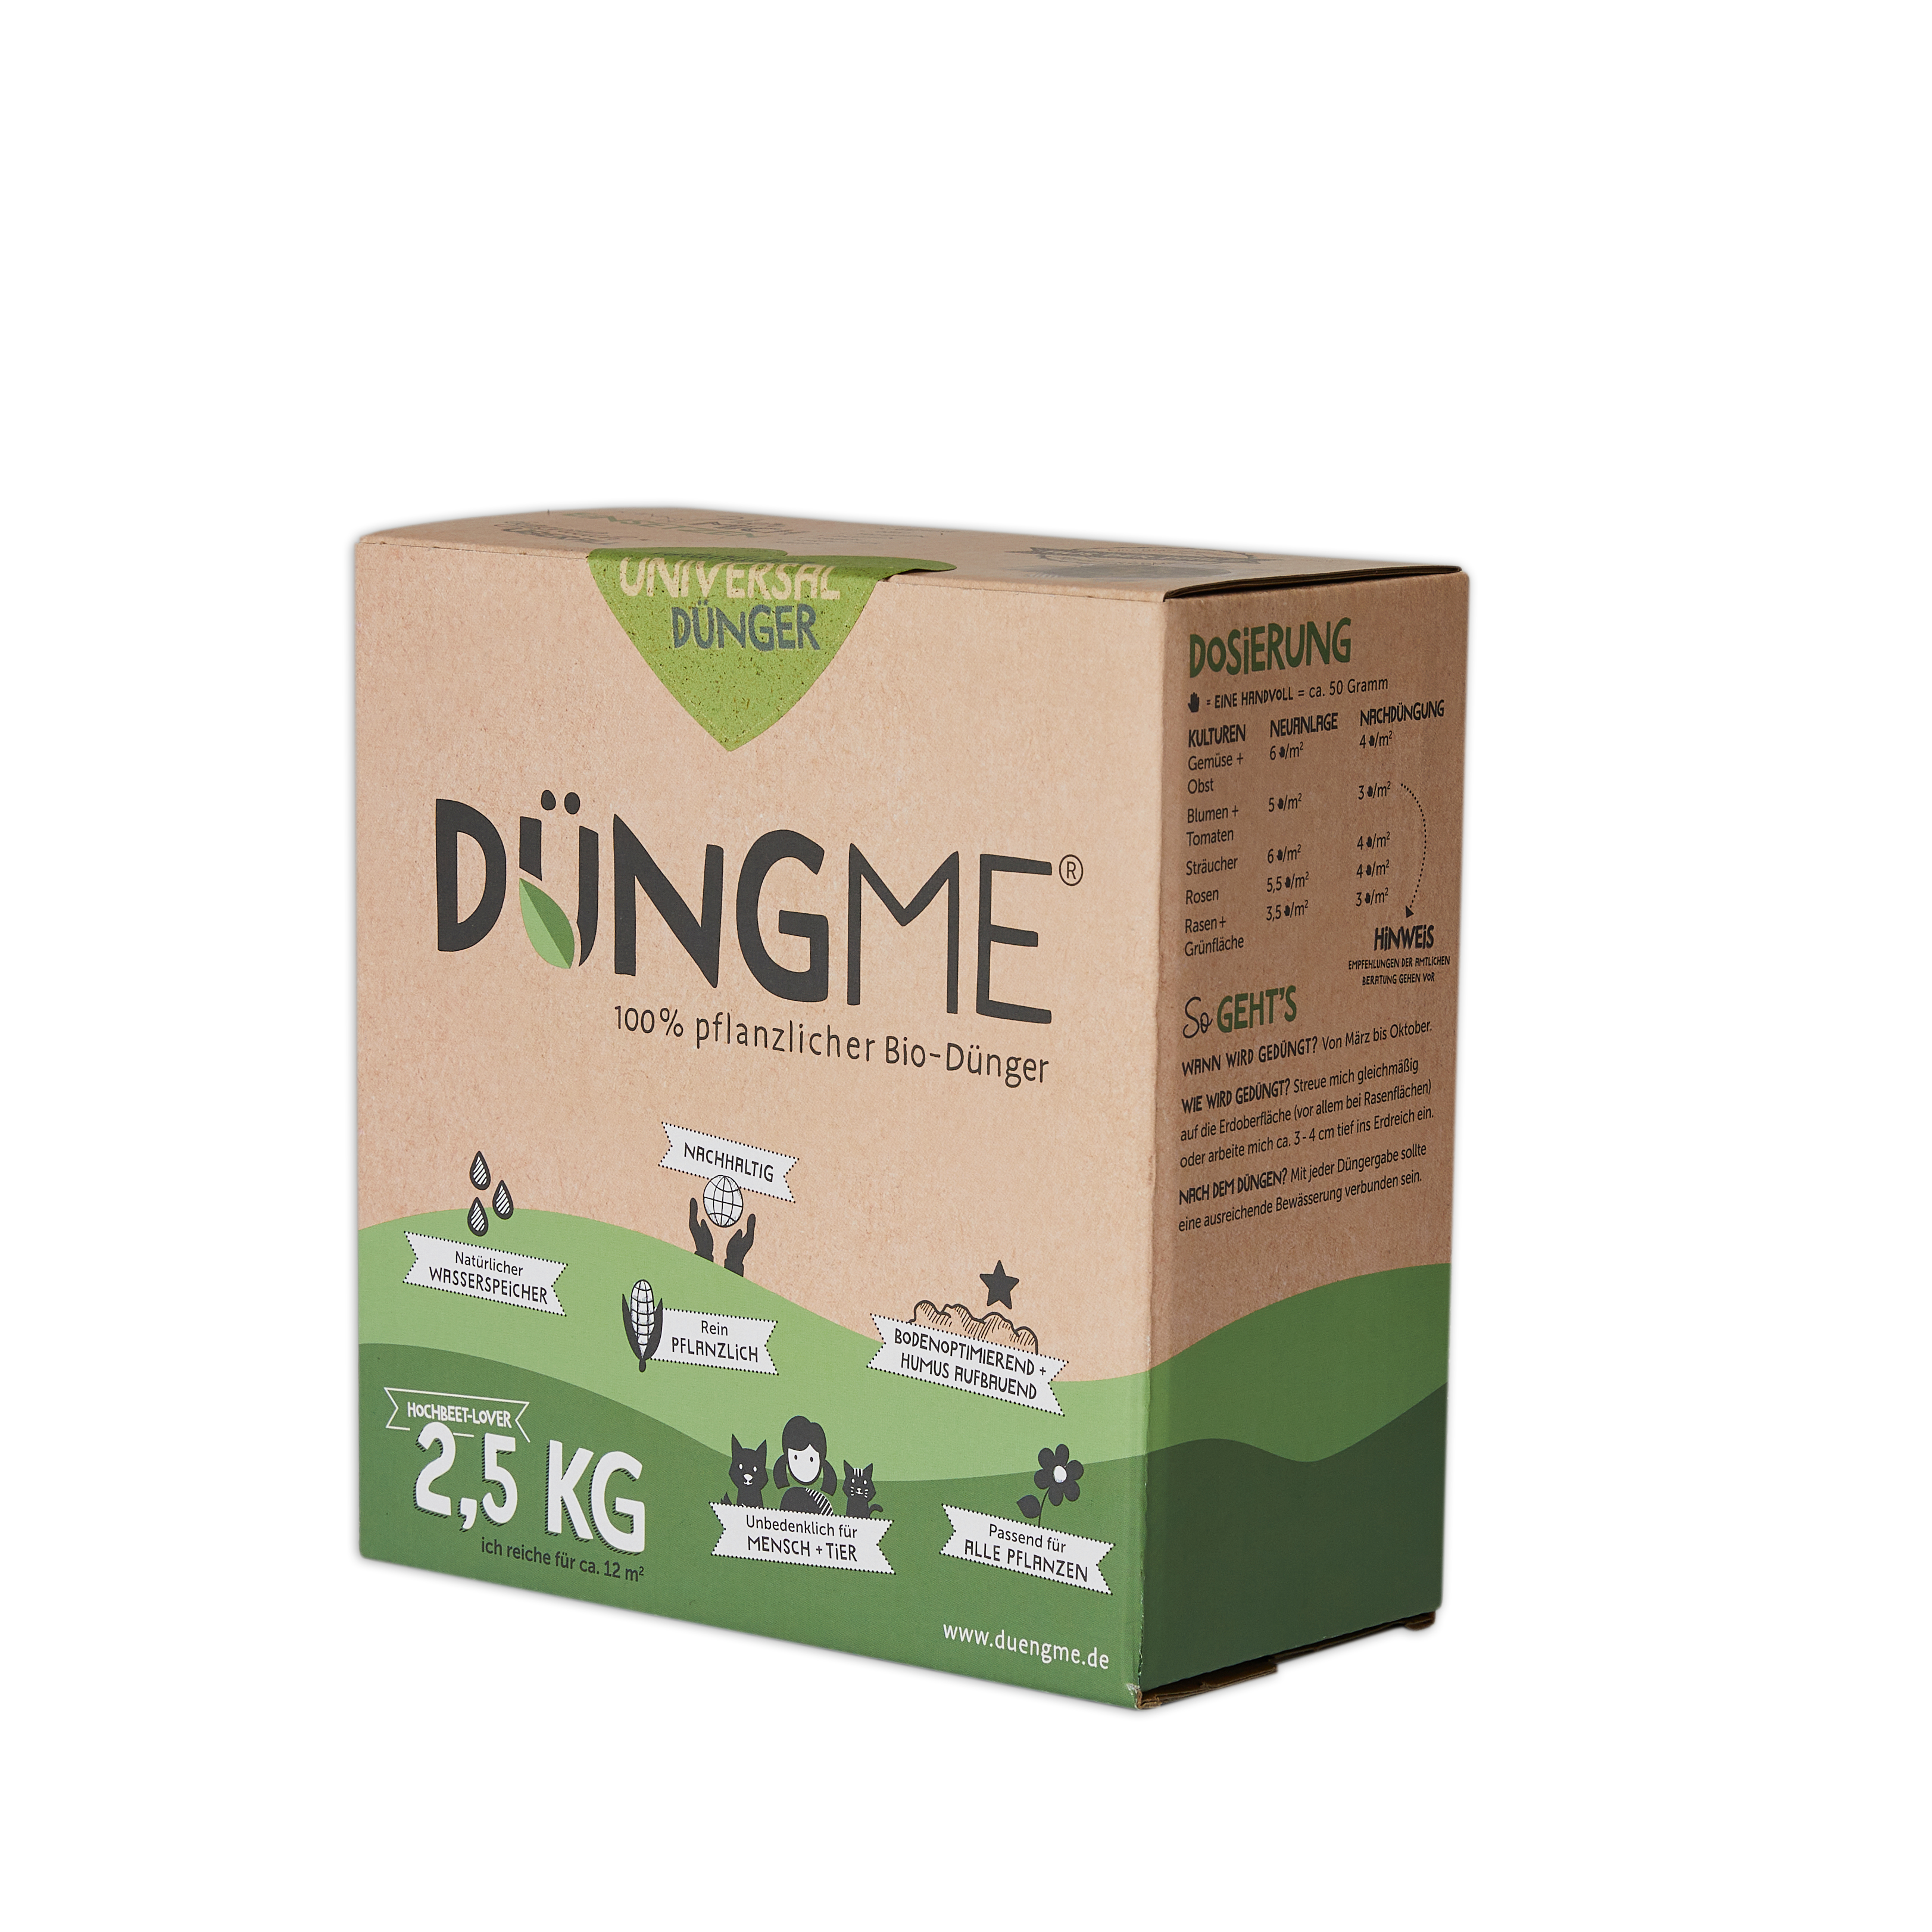 DüngMe - 2,5 Kg Universaldünger für 12 qm